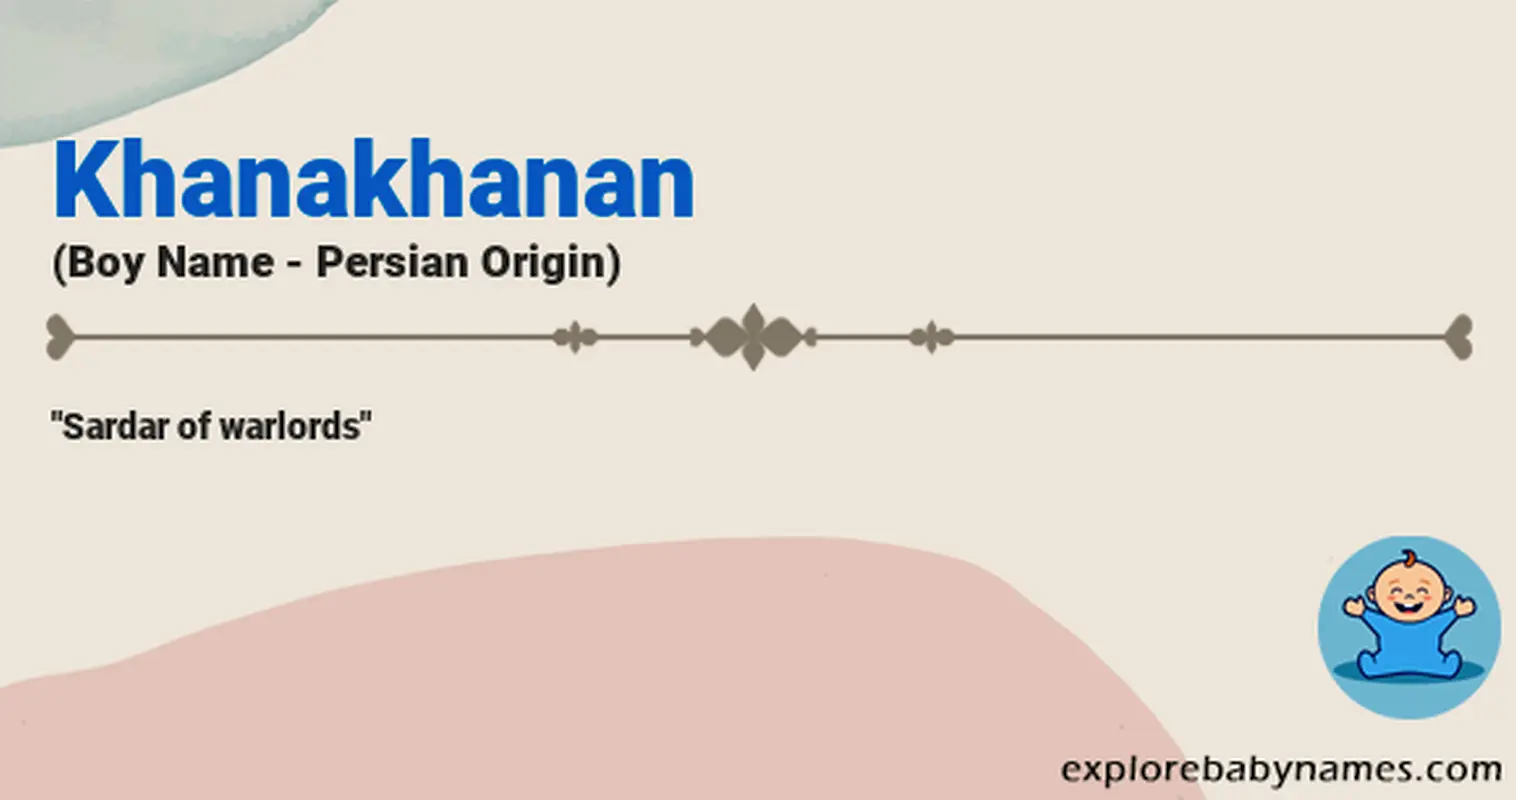 Meaning of Khanakhanan